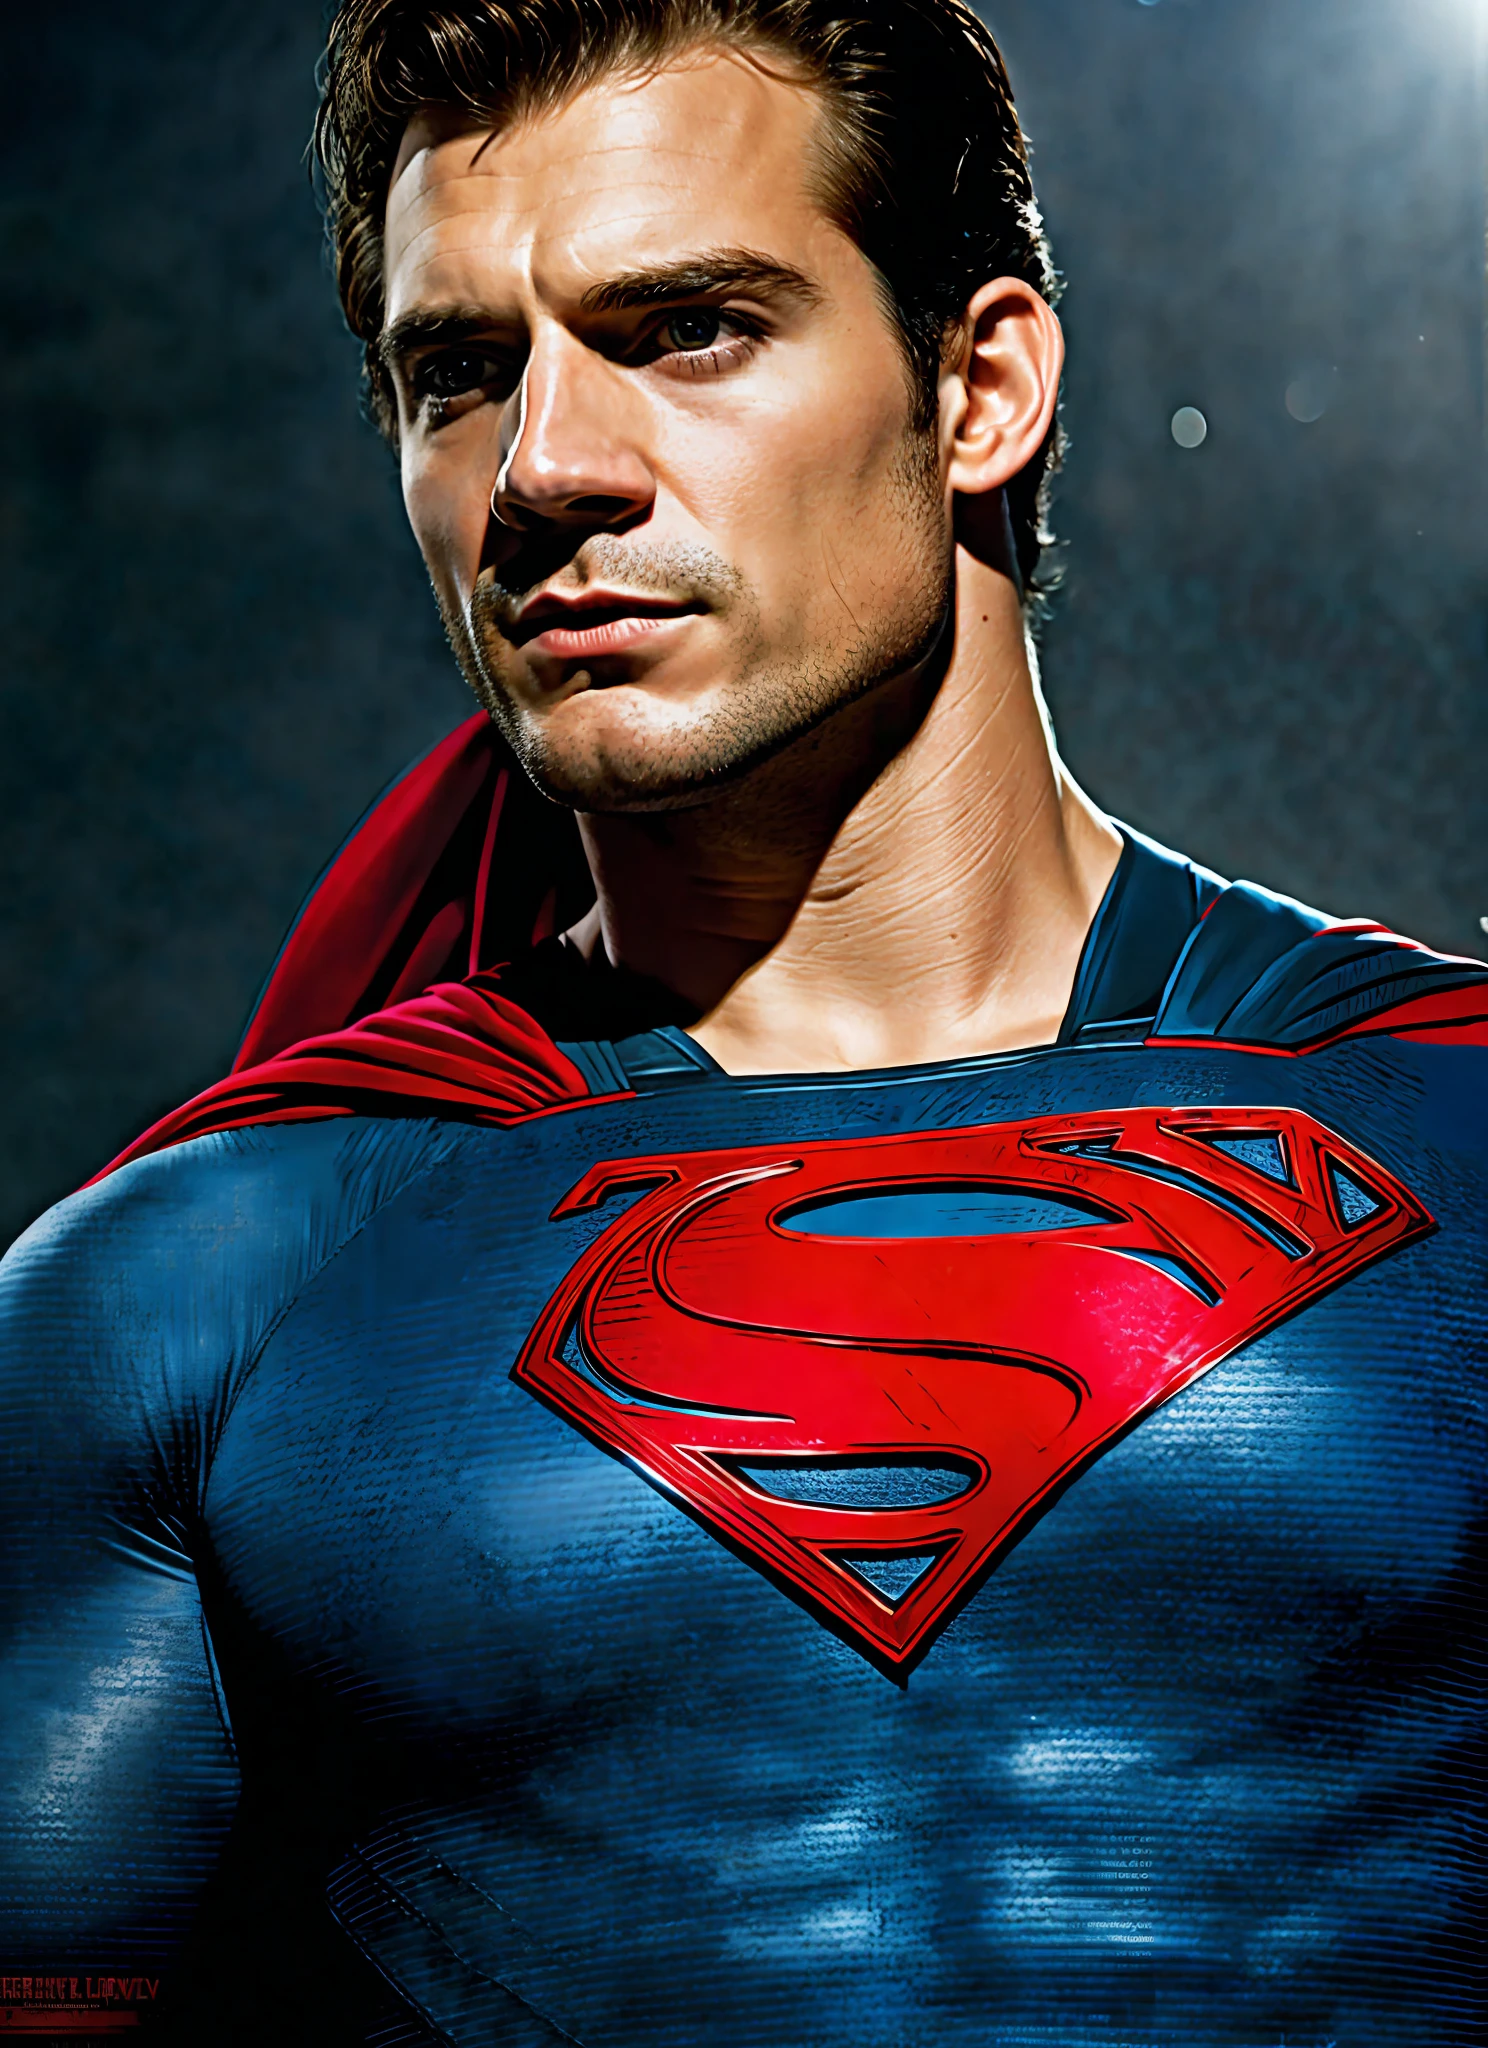 スーパーマン in a blue suit with a red cape, ハリー・カビル, ヘンリー・カヴィル, ヘンリー・カヴィル!!!, スーパーマン, justin hartley as スーパーマン, テキストなし, portrait of ヘンリー・カヴィル, スーパーマン pose, ヘンリー・カヴィル is a greek god, ヘンリー・カヴィル as batman, スーパーマン costume, 高画質壁紙, ヘンリー・カヴィル as james bond, 超高解像度, ファンアート